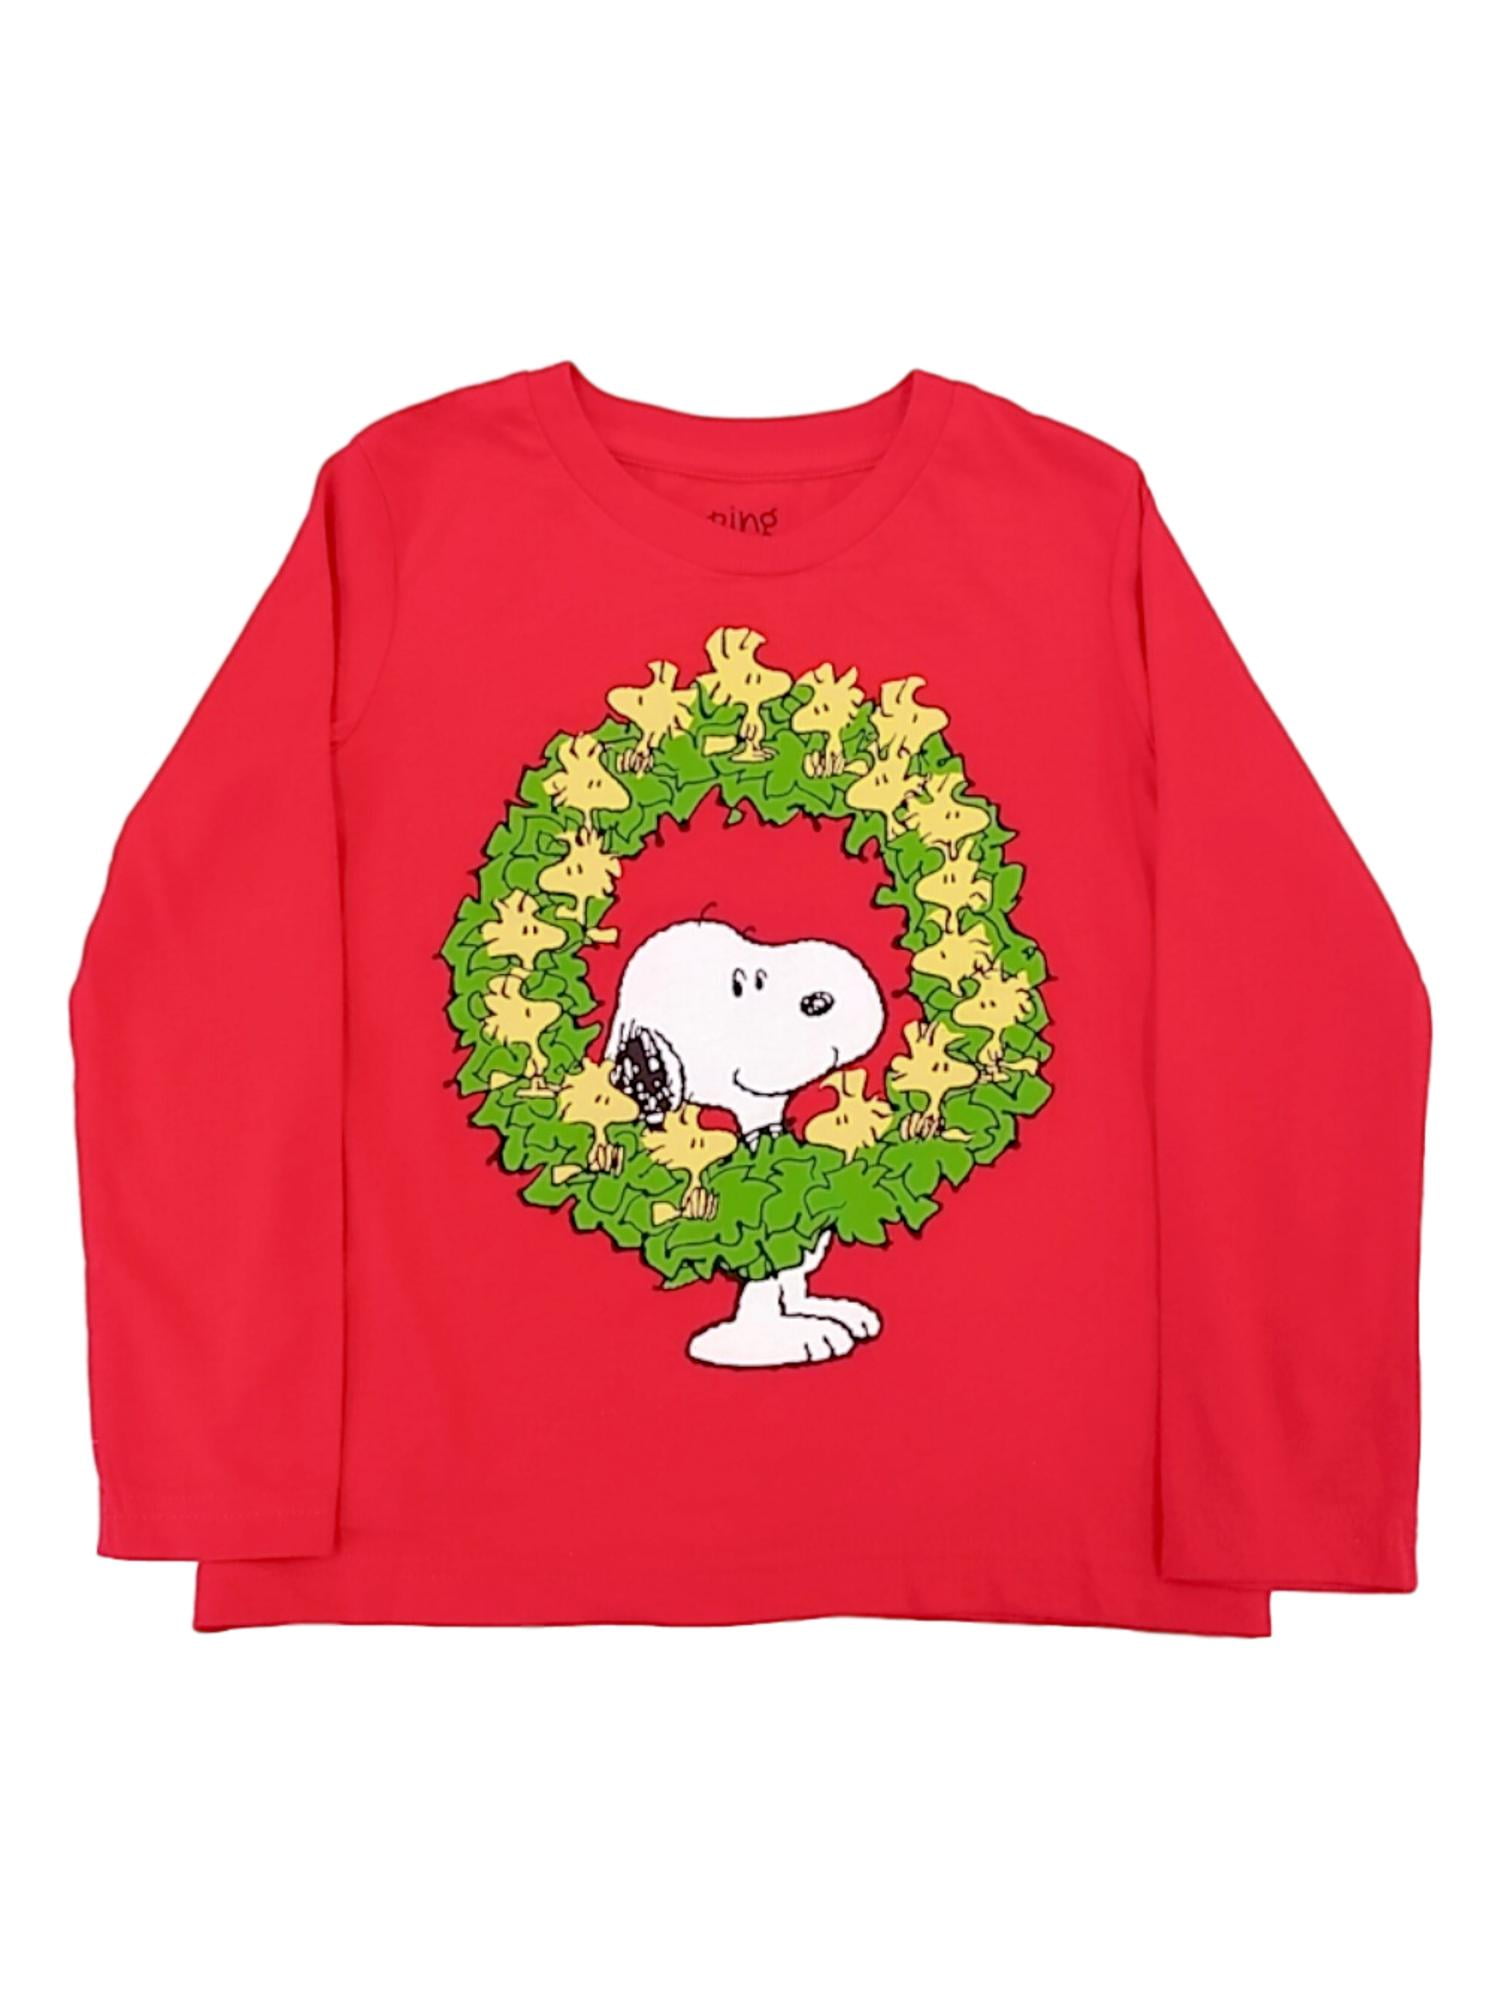 Peanuts Snoopy Woodstock Wreath Mens Hooded Sweatshirt